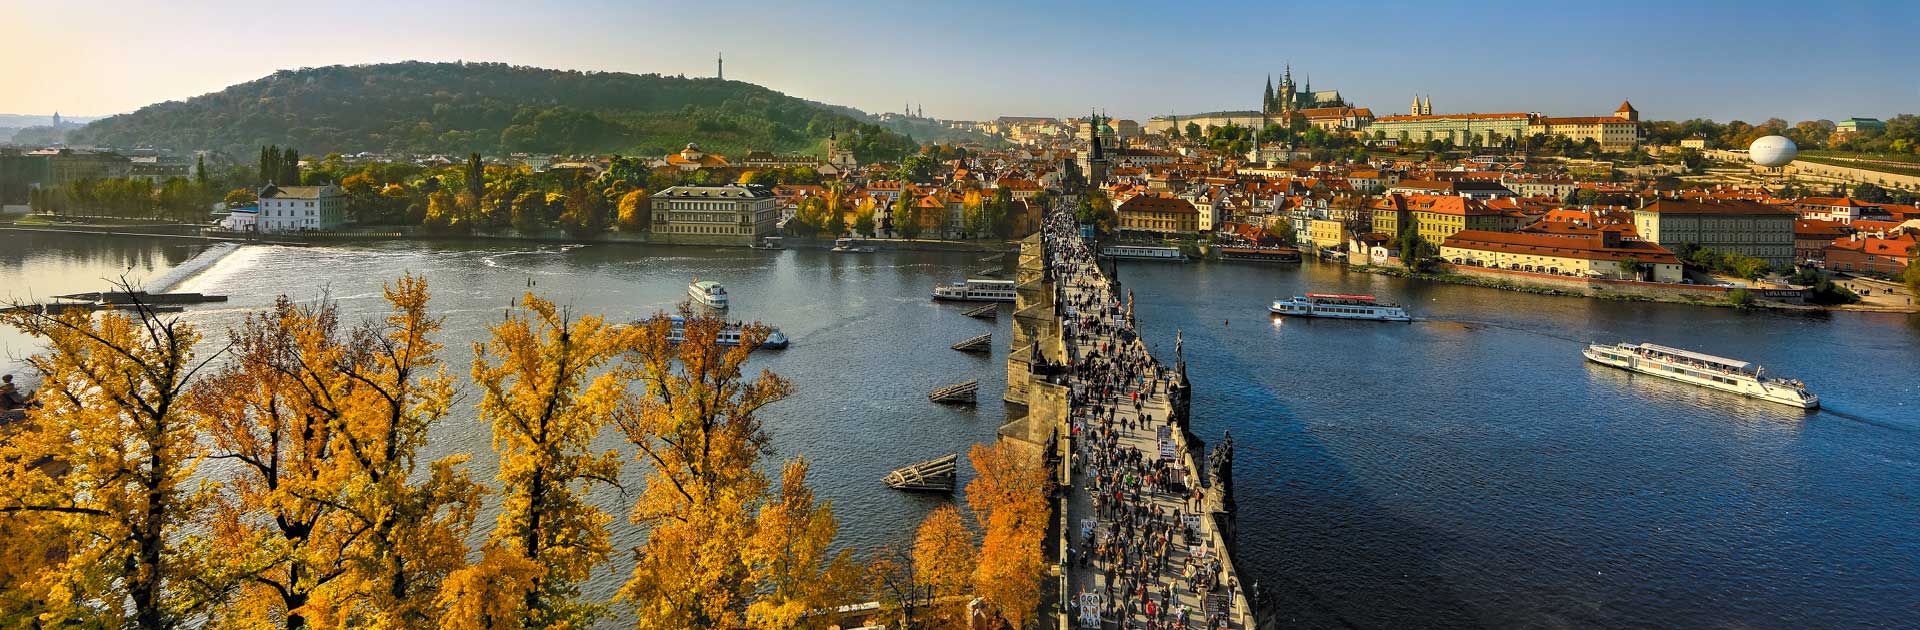 Karlův most přes řeku Vltavu, Praha, foto: Libor Sváček